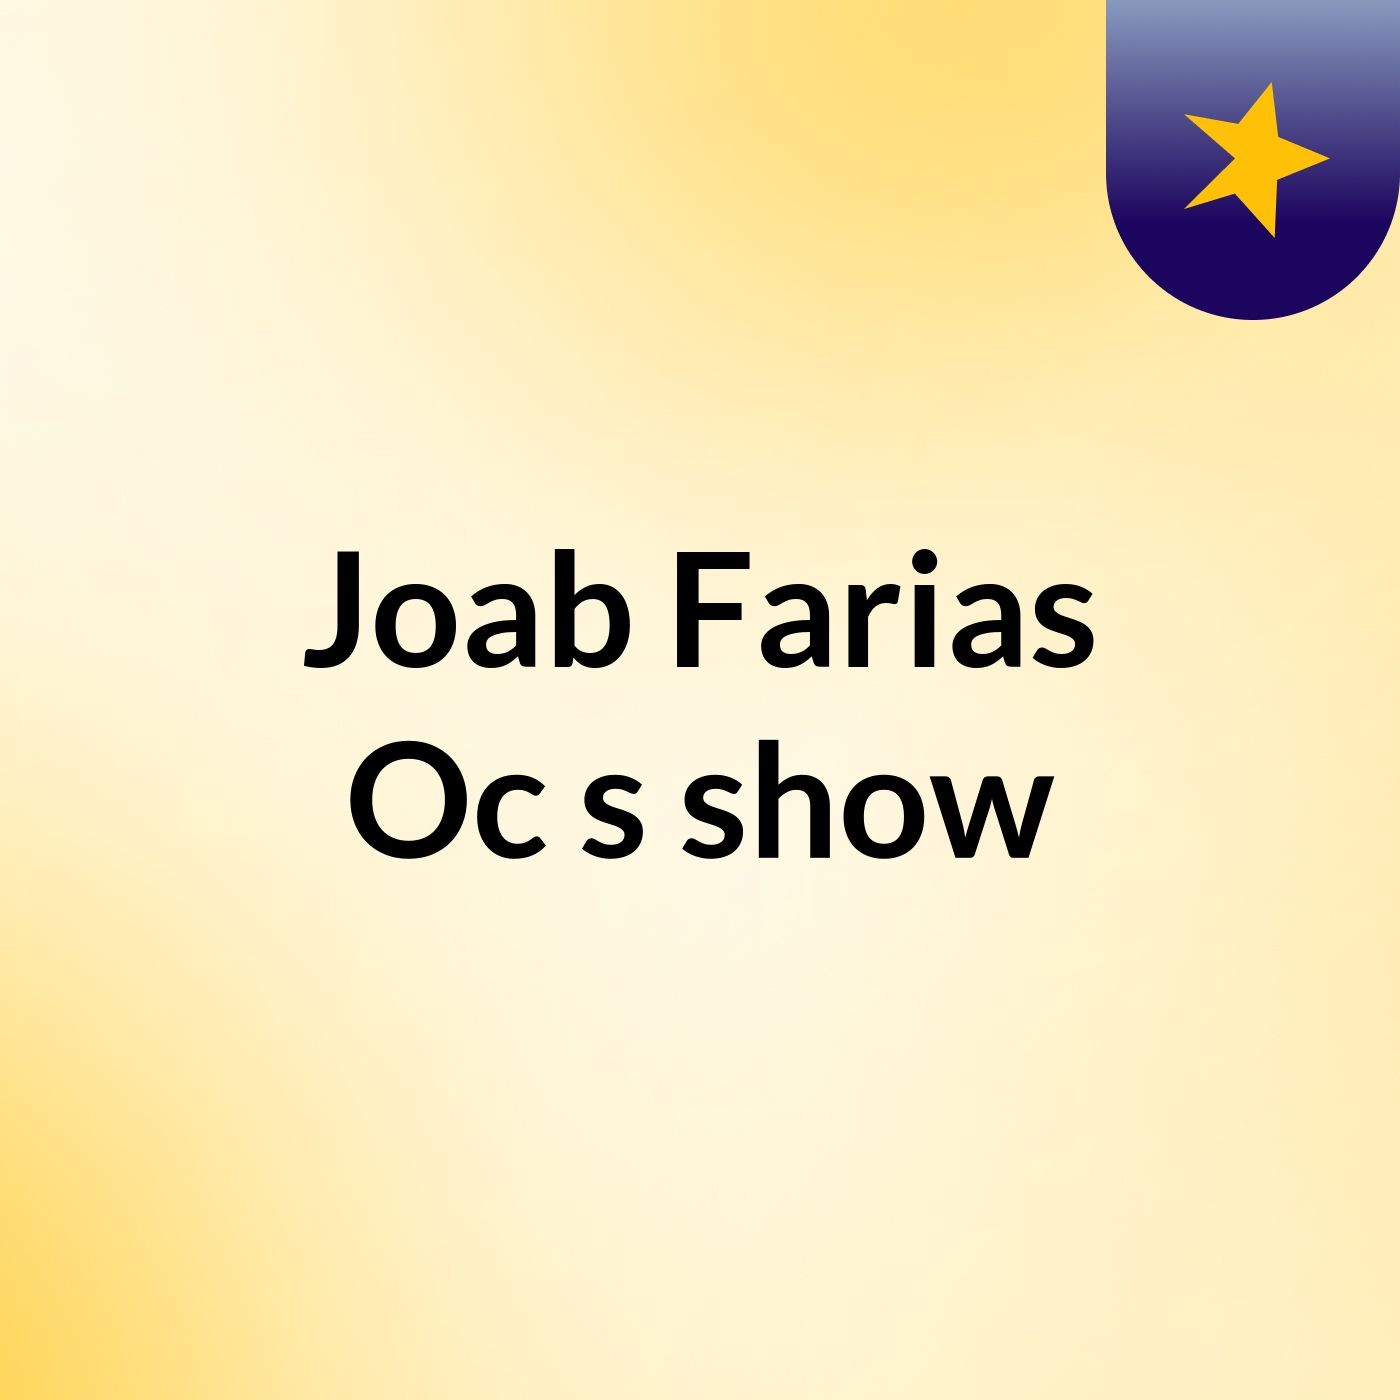 Joab Farias Oc's show